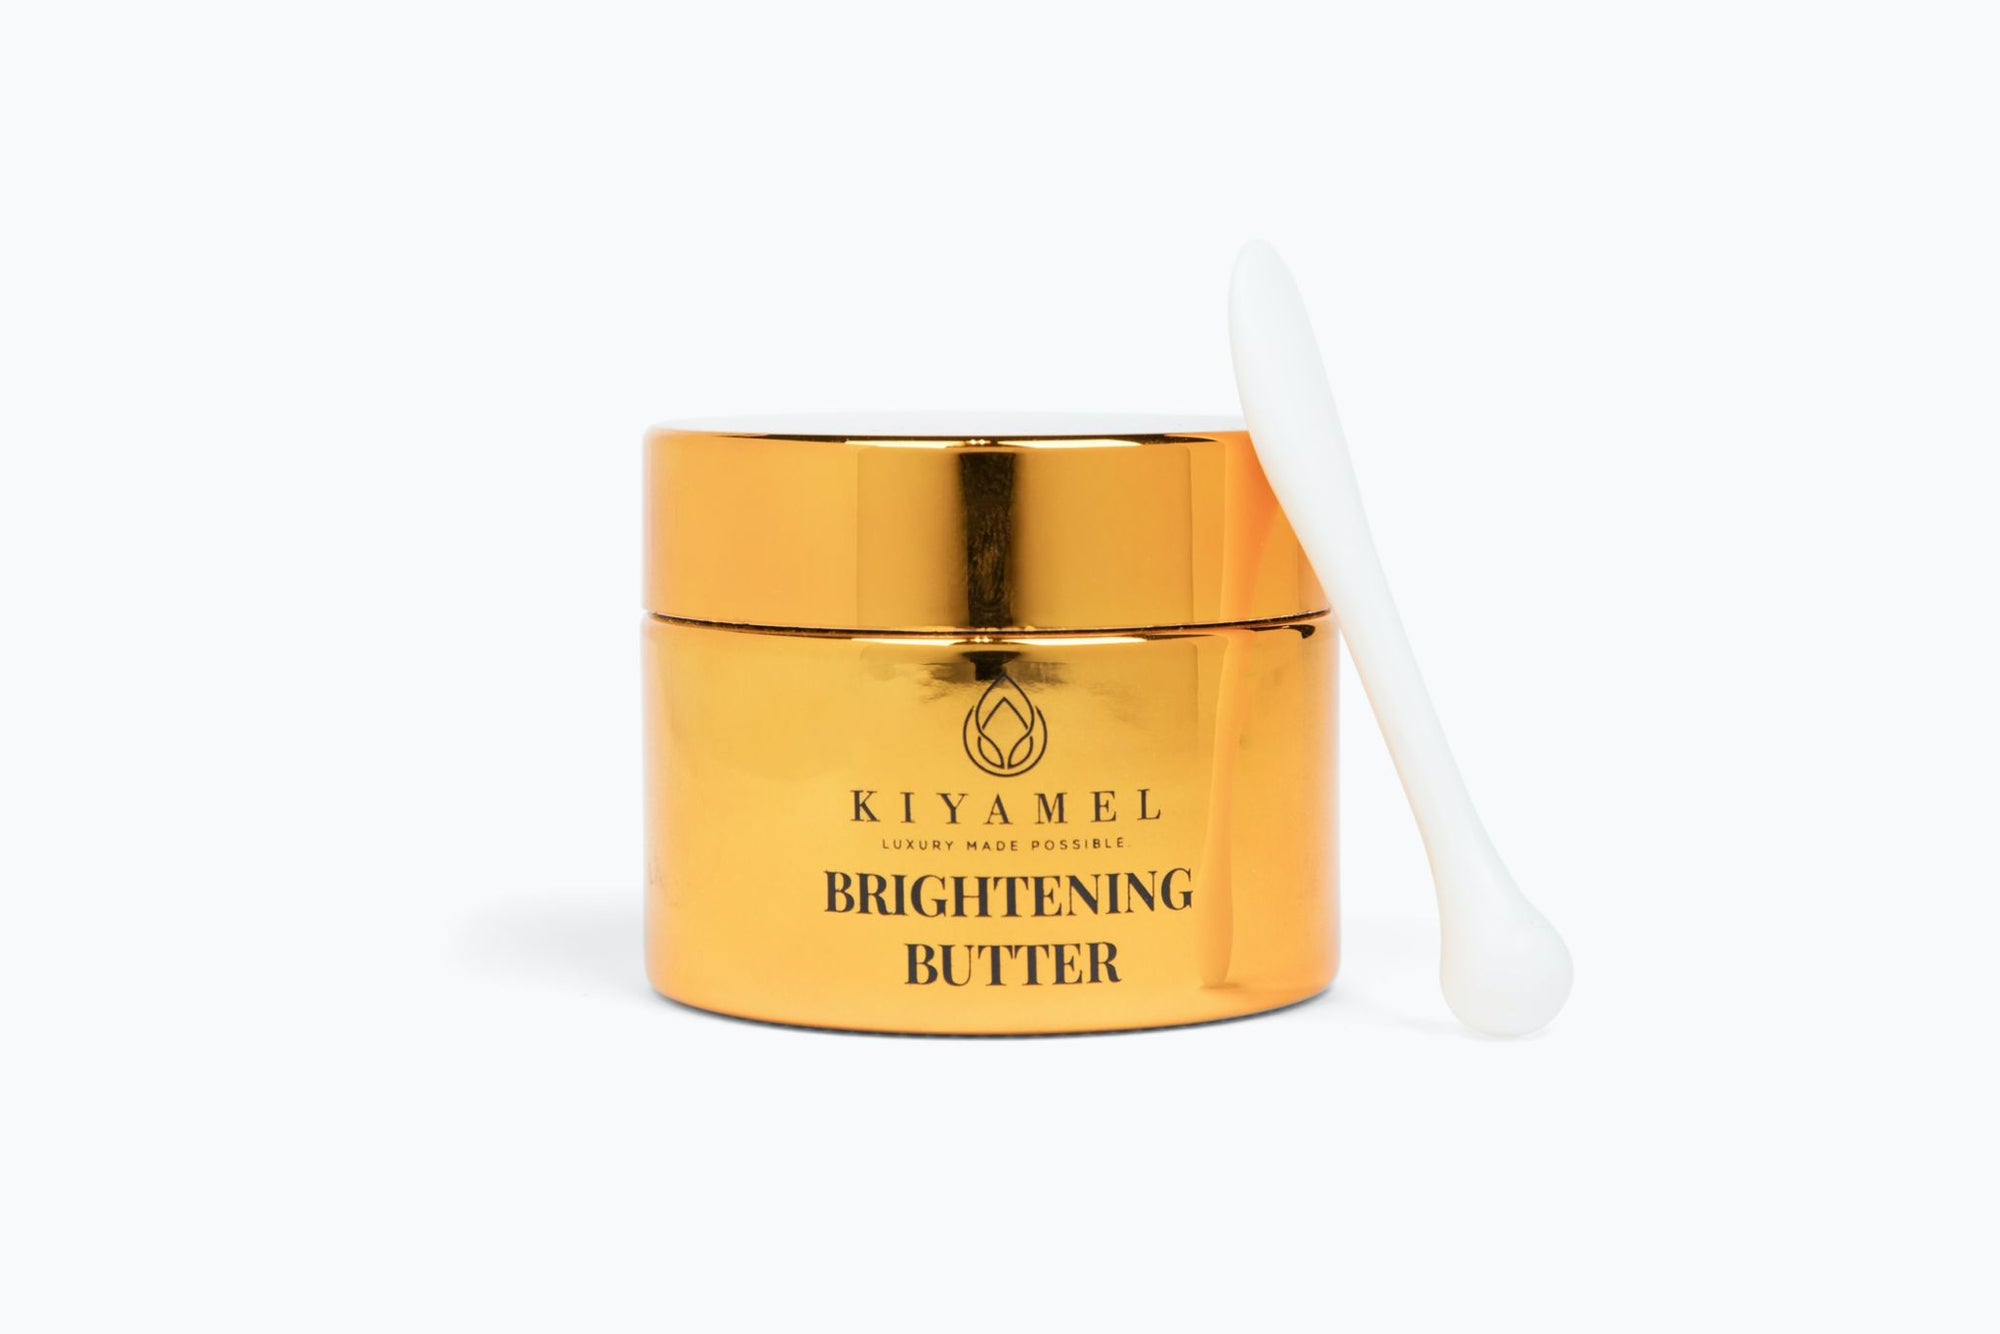 Revolutionary Brightening Butter | kiyamel